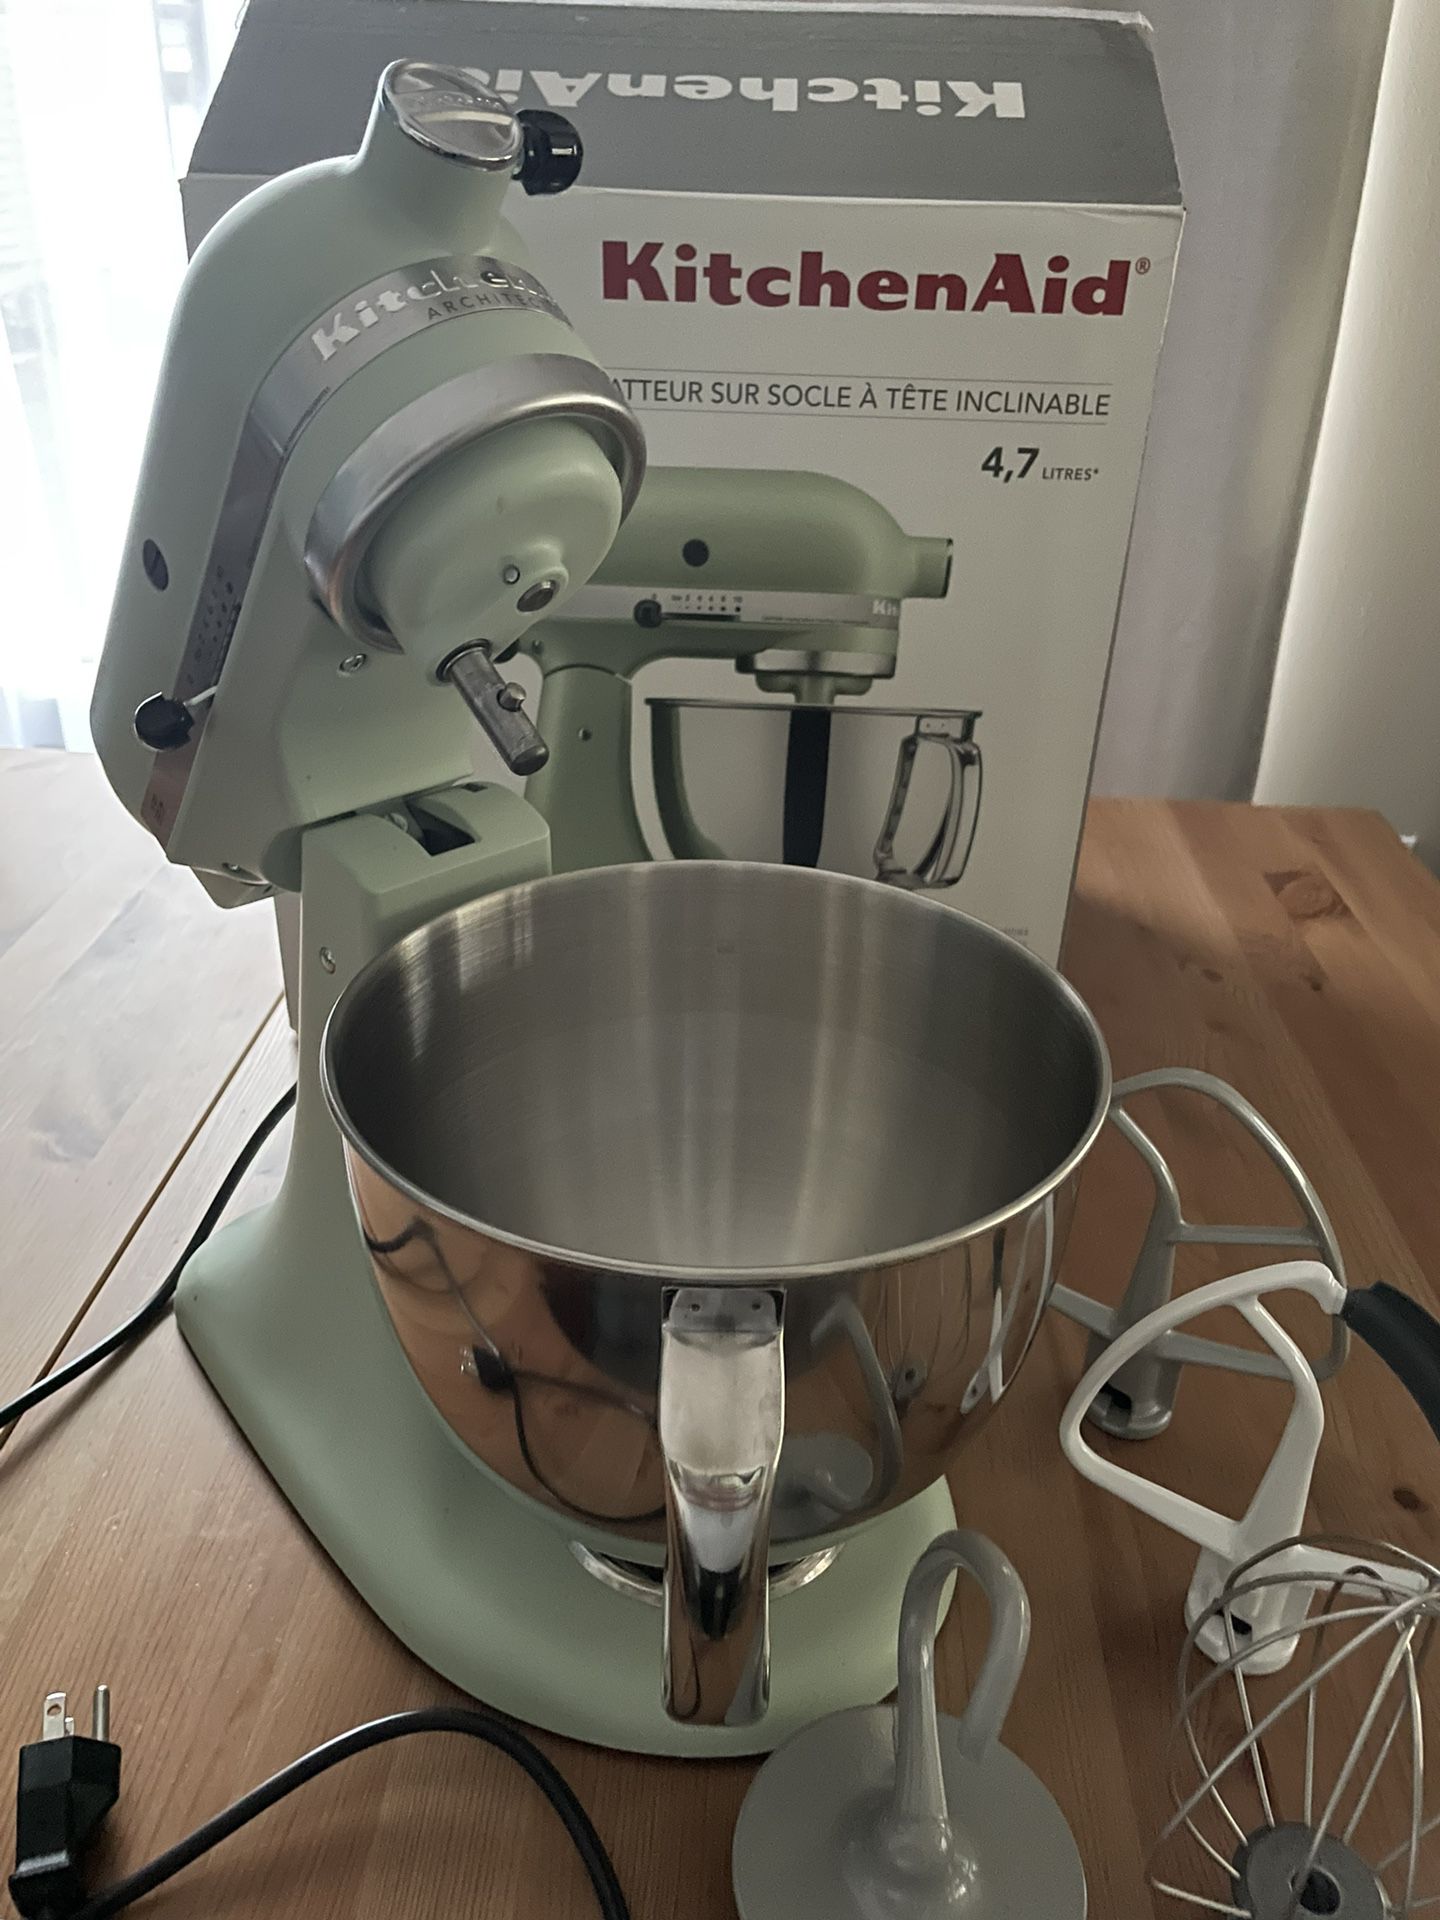 Tilt-head 5QT KitchenAid Mixer in Matte Pistachio for Sale in